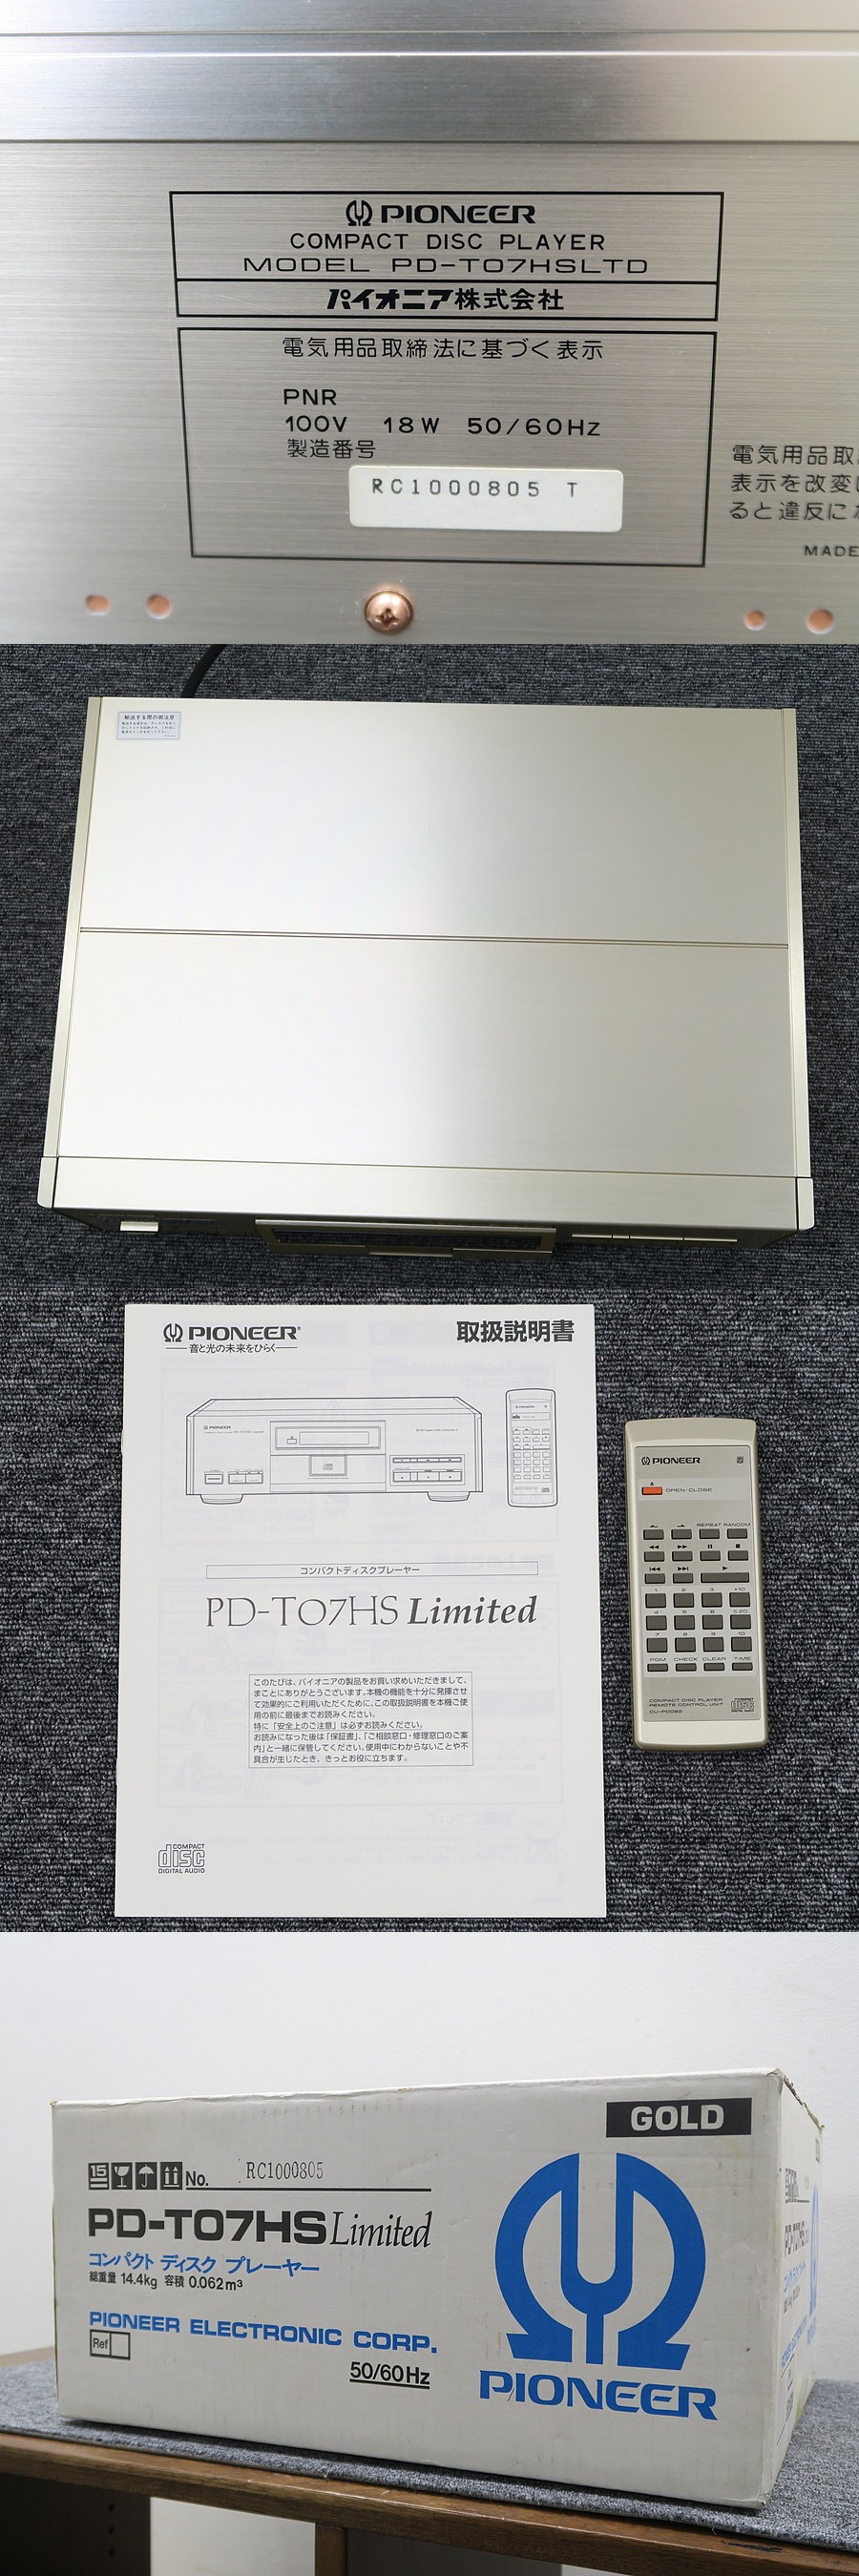 パイオニア Pioneer PD-T07HS Limited CDデッキ 元箱付 @43859 / 中古